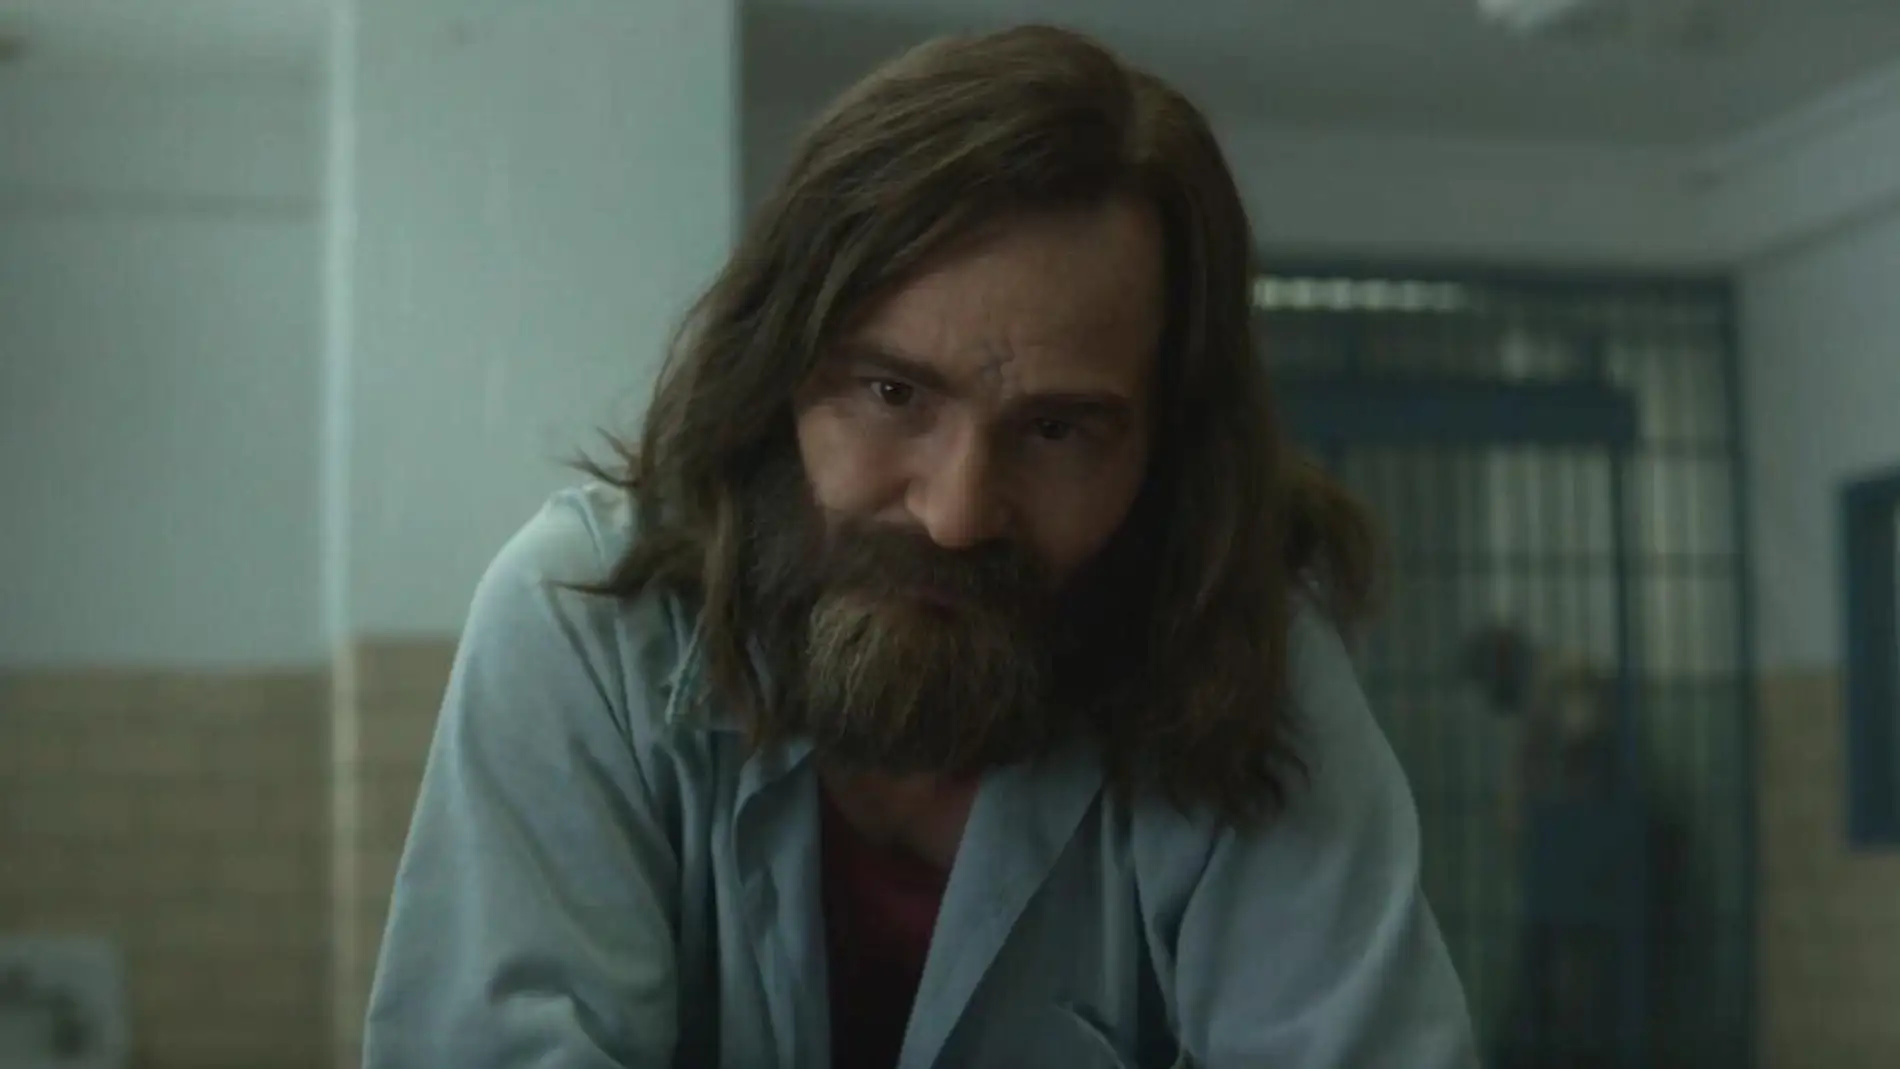 Damon Herriman como Charles Manson en 'Mindhunter'